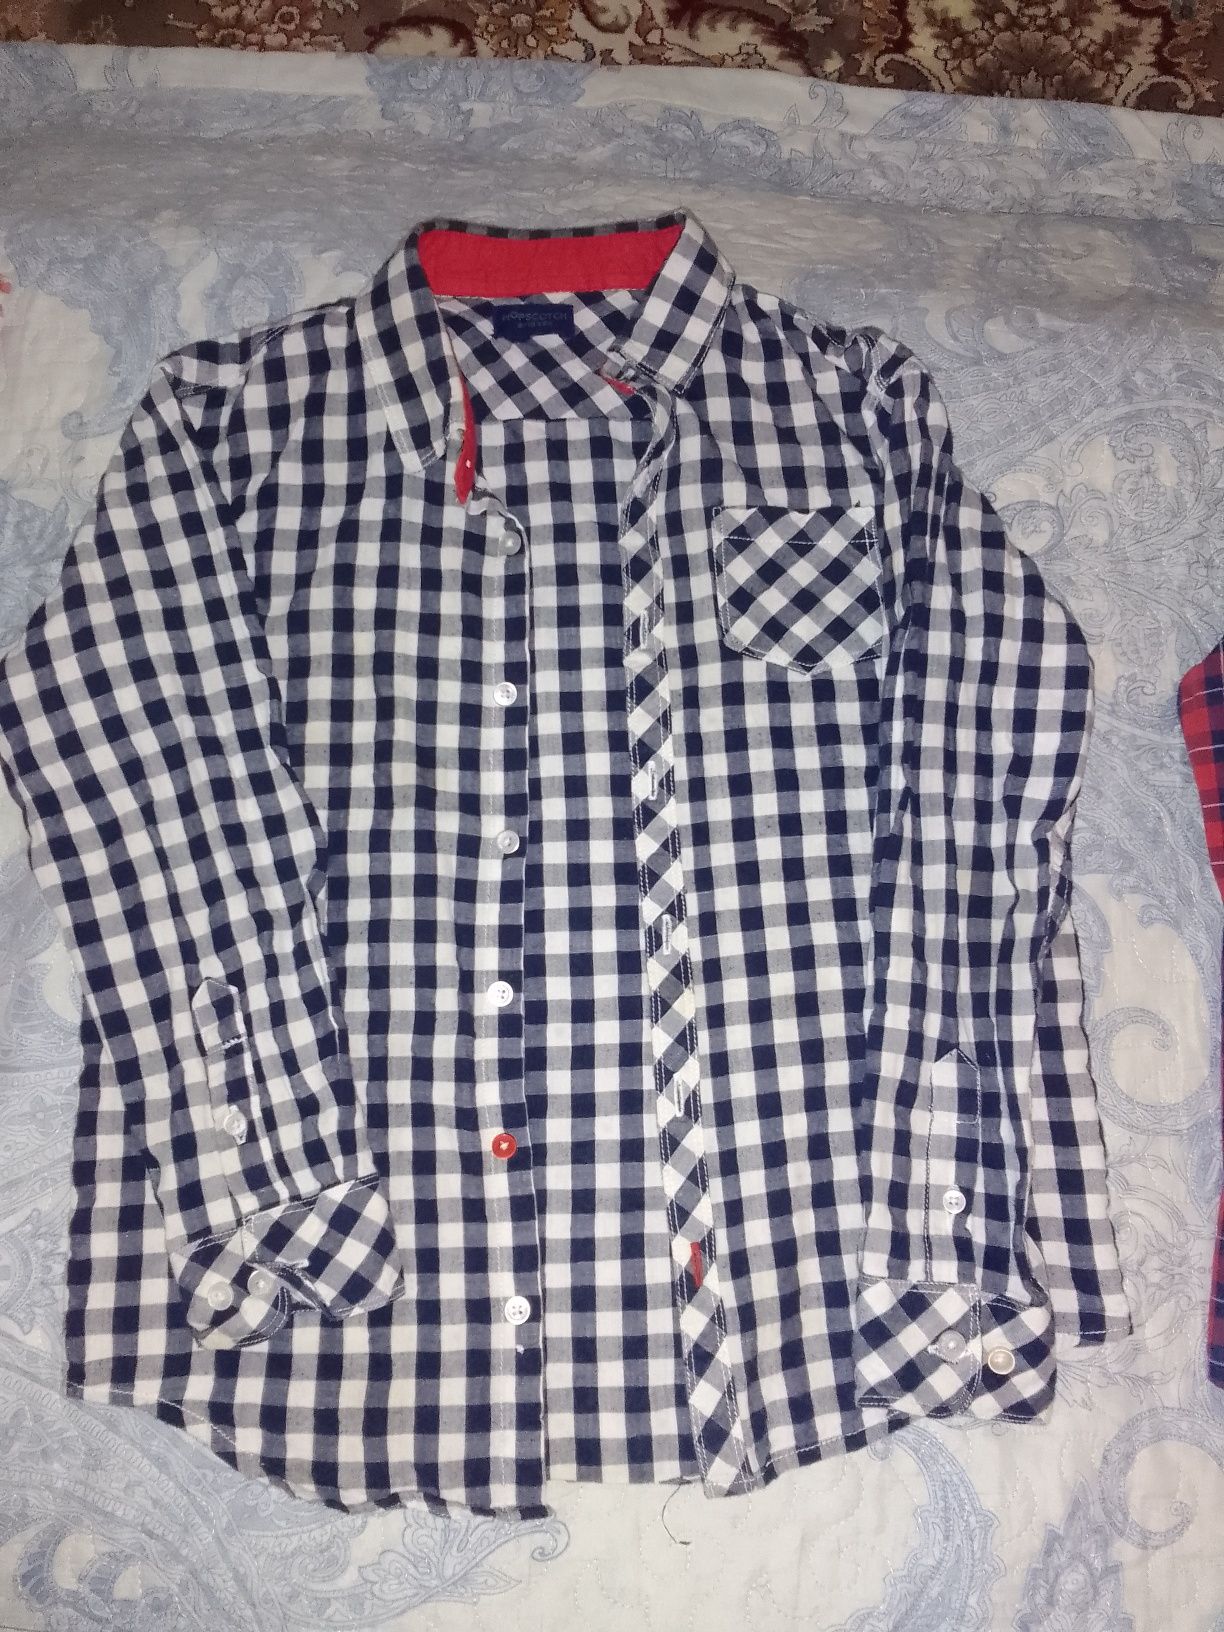 Детские рубашки,кофты,куртки,джинсы.от 7-11 лет.Пр-во Пакистан,США